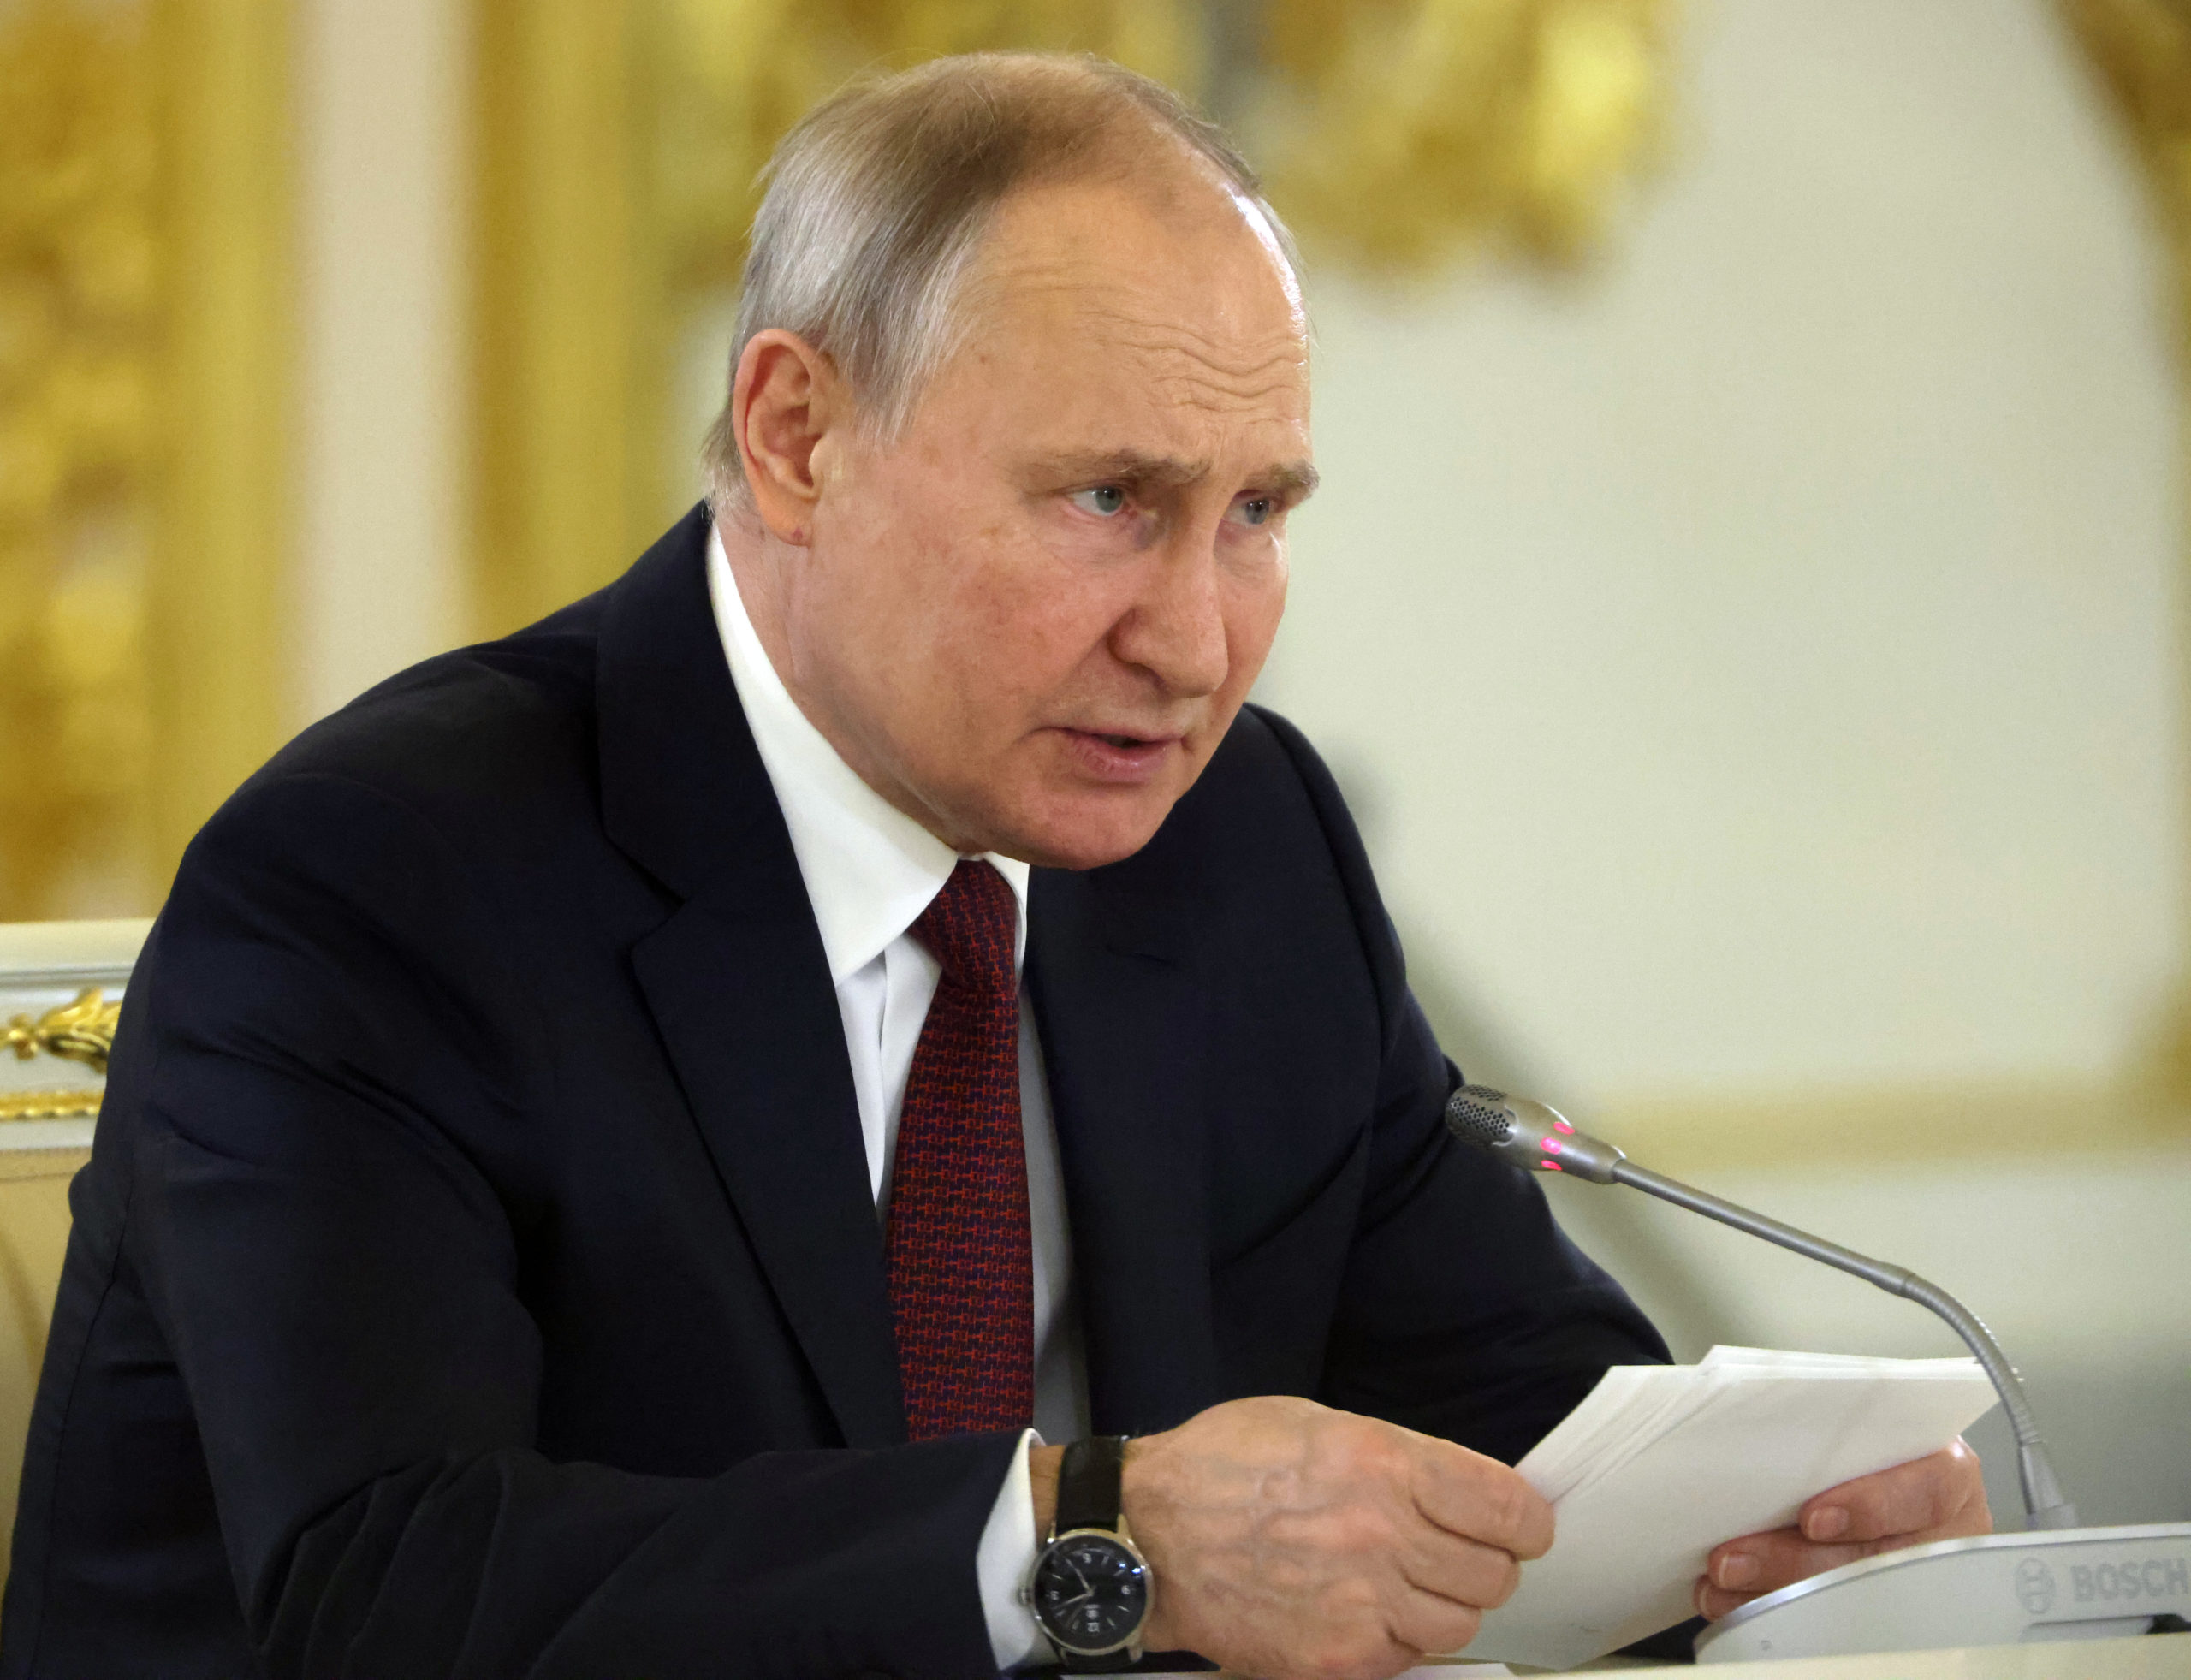 reaktion auf aussagen westlicher politiker: russland kündigt übung von nuklearstreitkräften an